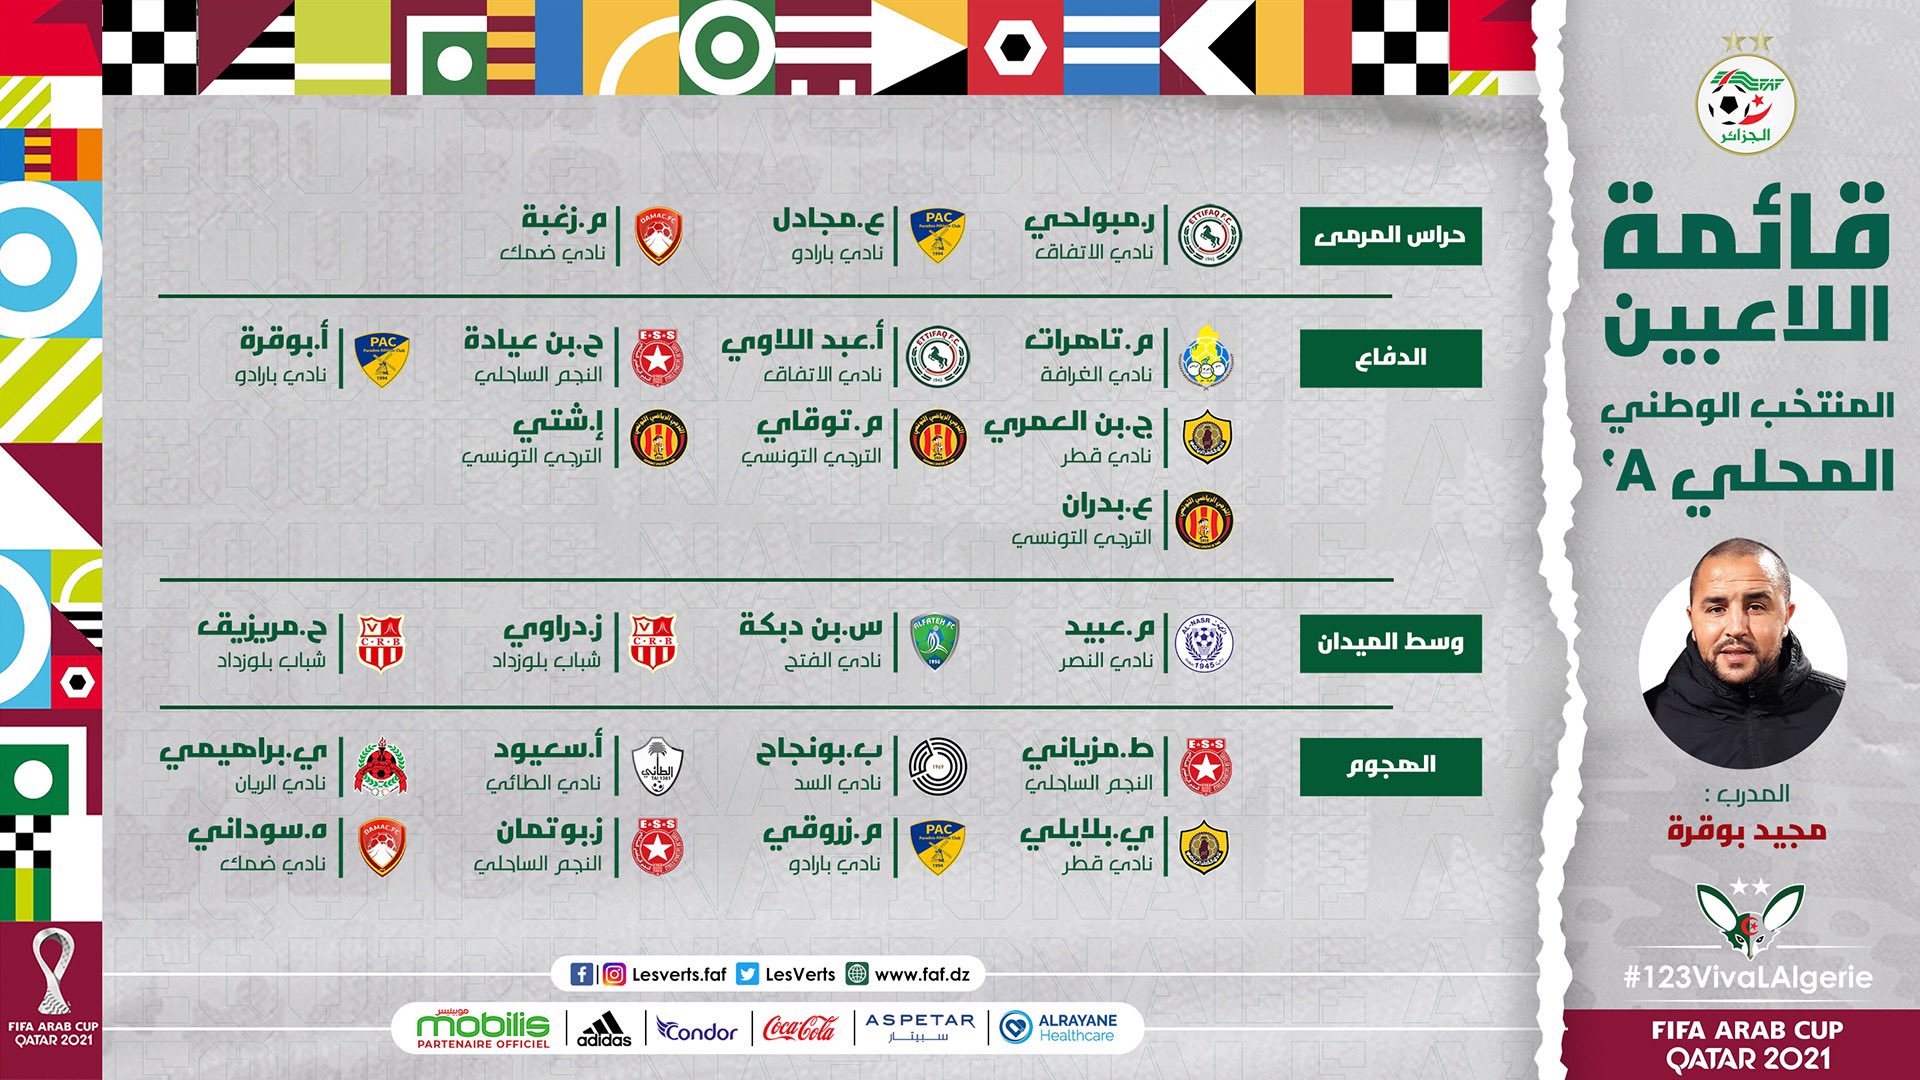 كأس العرب للمنتخبات - قطر 2021 - صفحة 2 P_2156vki770